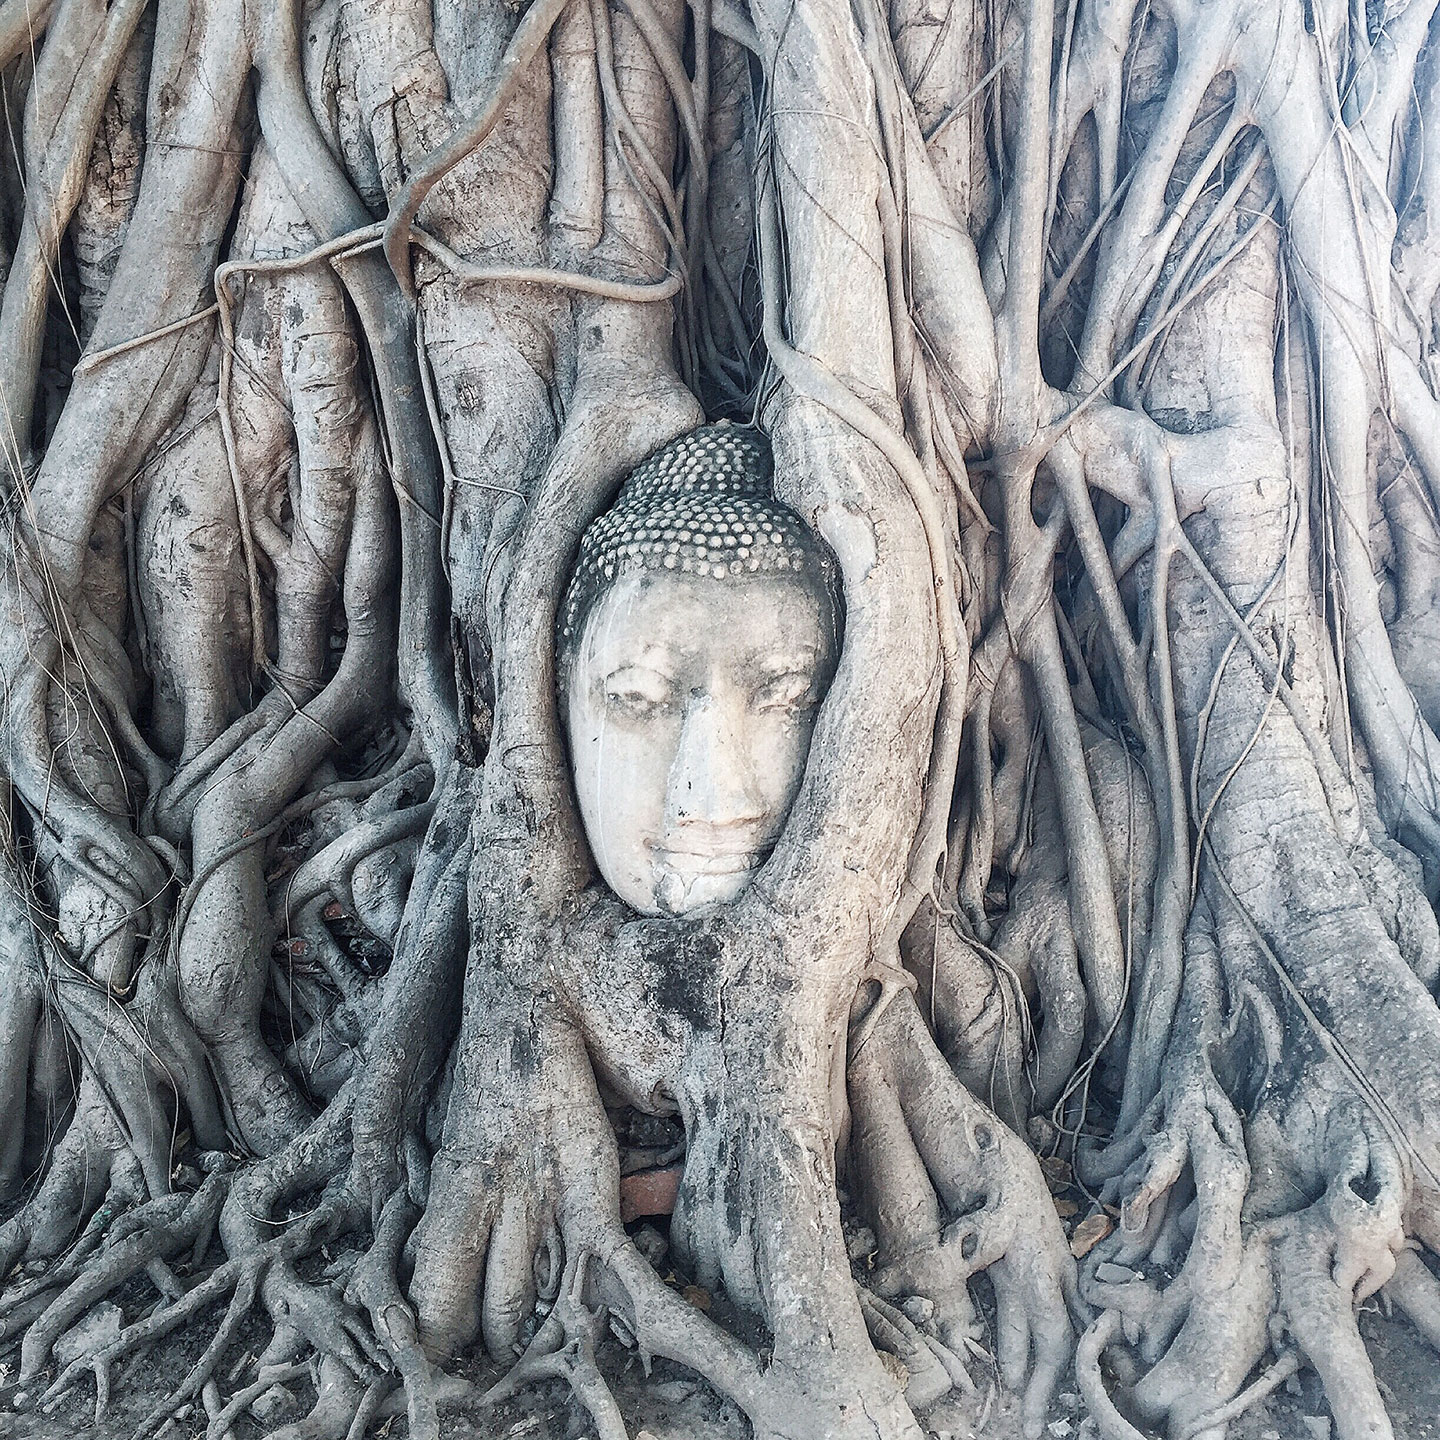  Buddha in a Banyan Tree at Wat Mahathat 